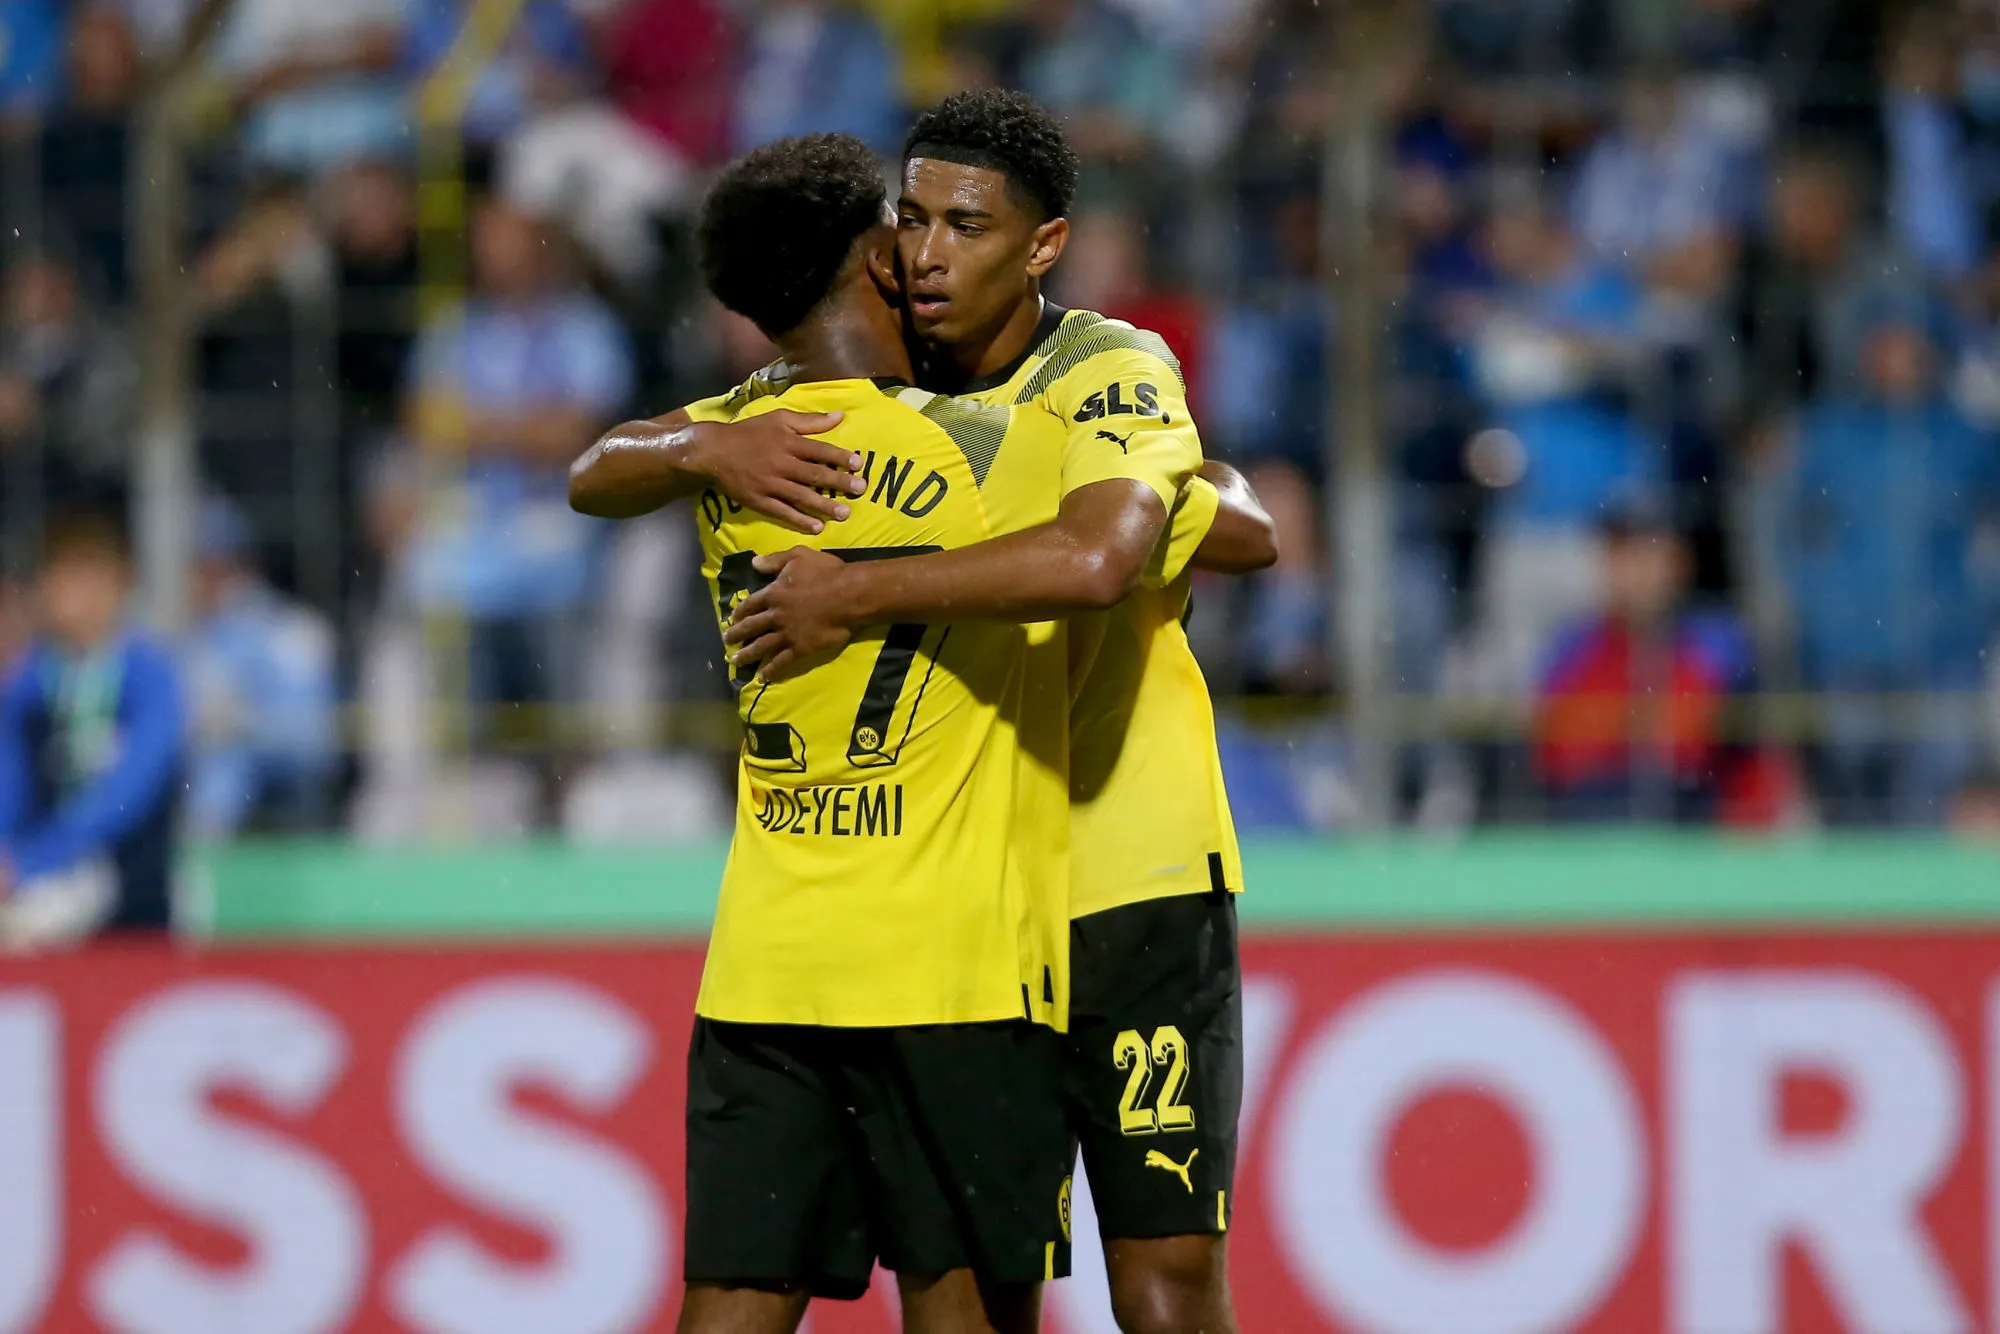 Pronostic Borussia Dortmund Hoffenheim : Analyse, cotes et prono du match de Bundesliga